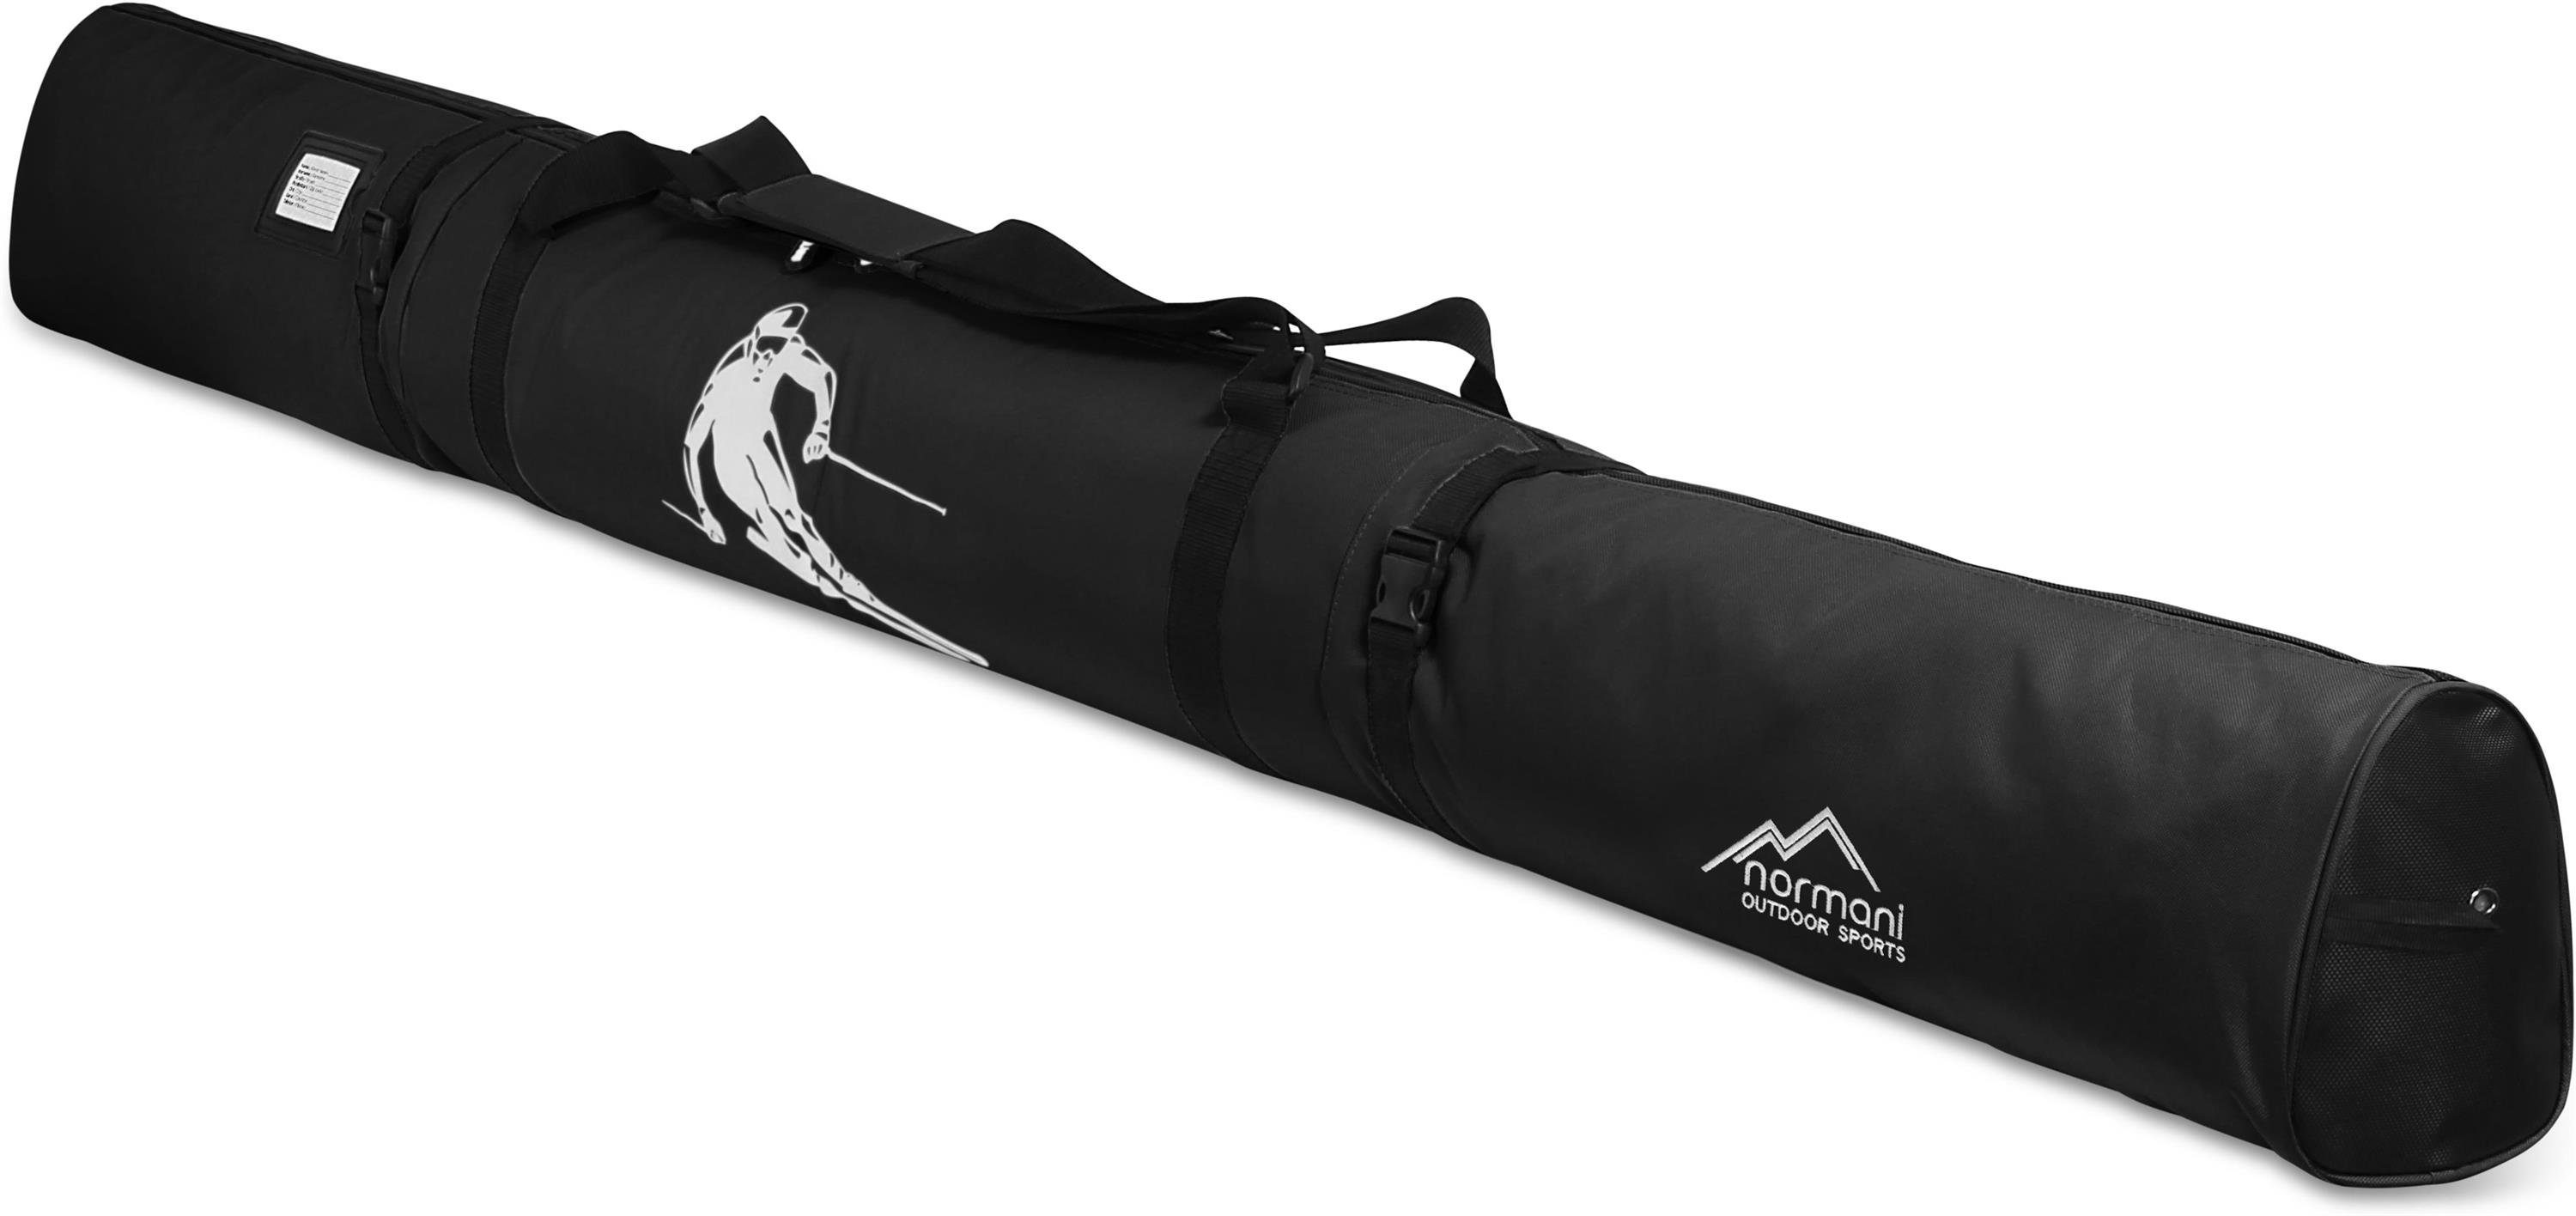 normani Sporttasche Skitasche Alpine Run Skisack 200, Skitasche für Skistöcke Aufbewahrungstasche und Skier Transporttasche - Schwarz